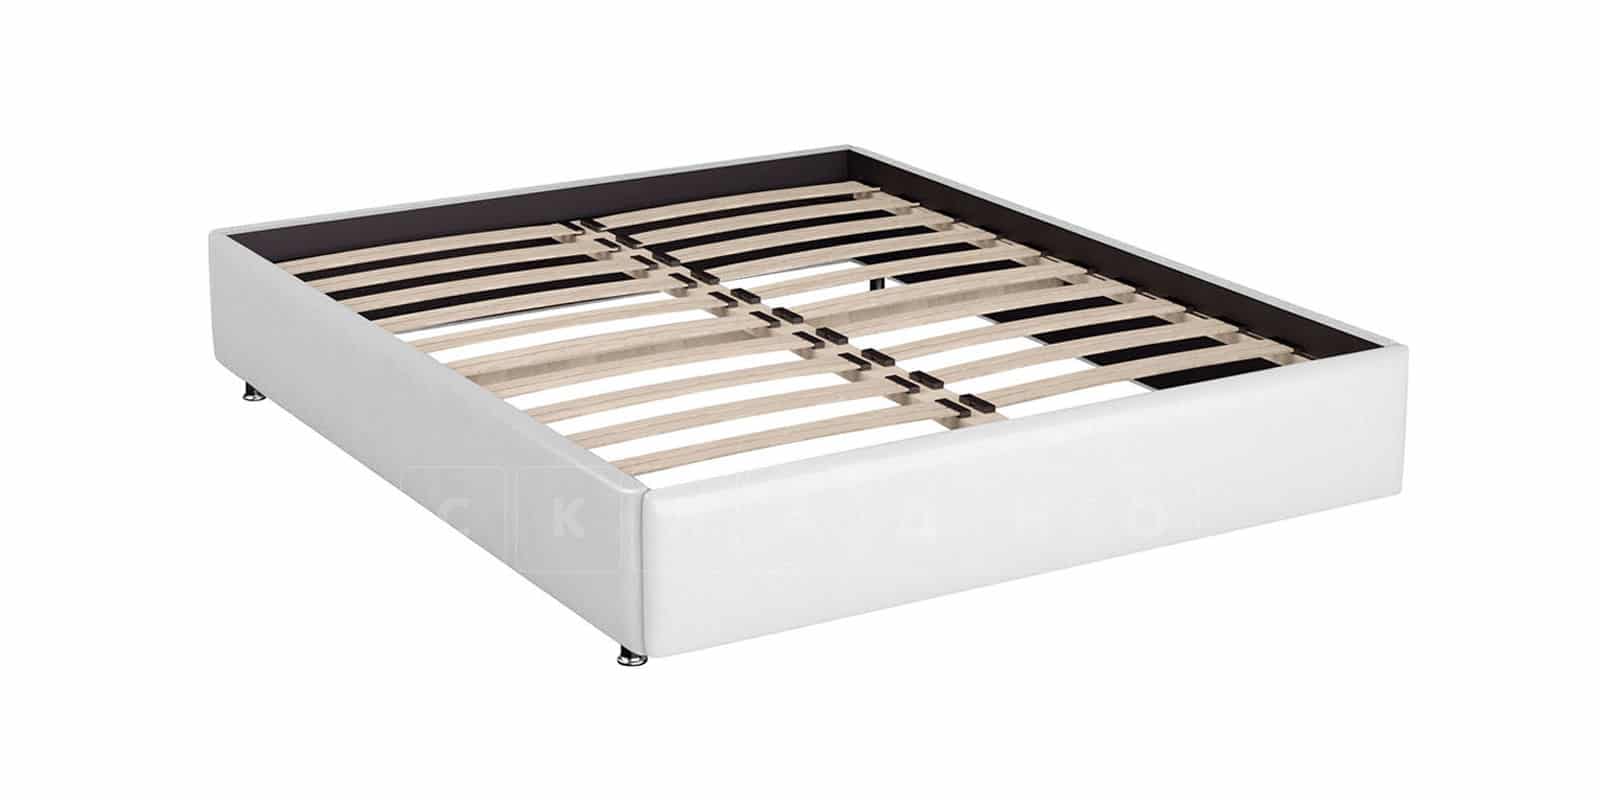 Мягкая кровать Малибу 160см экокожа белого цвета вариант 7-2 фото 4 | интернет-магазин Складно